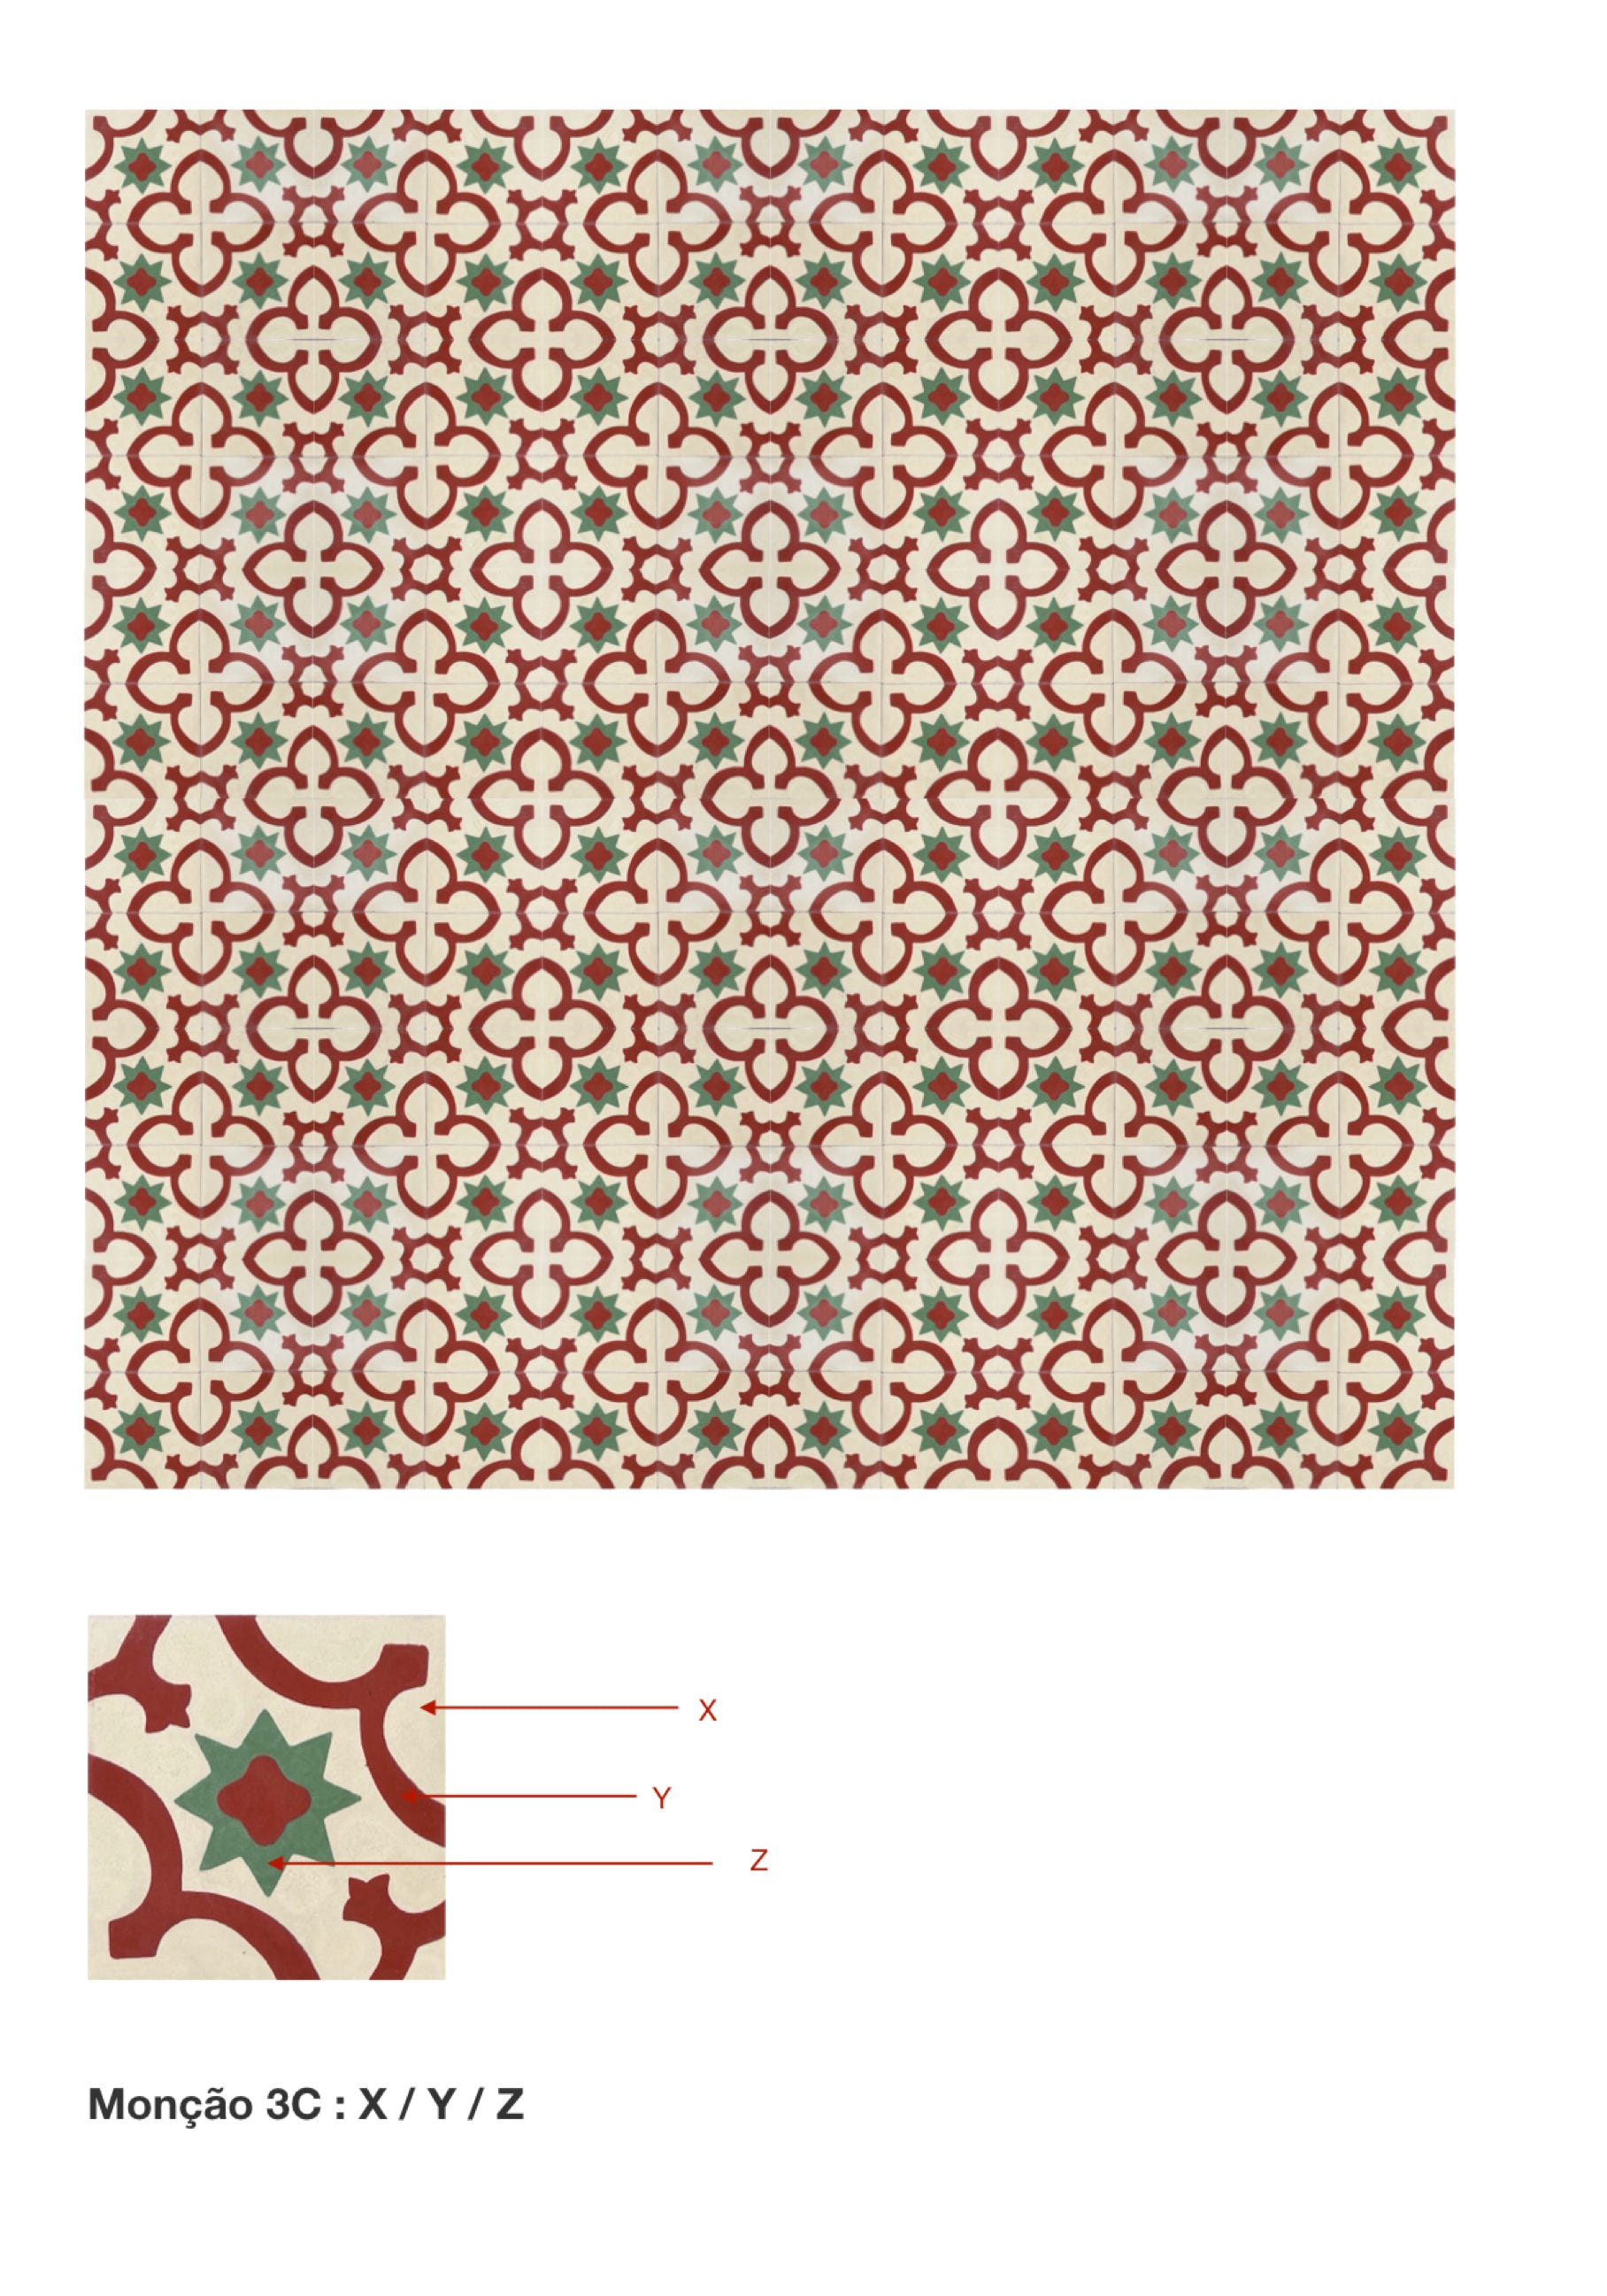 illustração de aplicação do mosaico hidráulico ref: monção